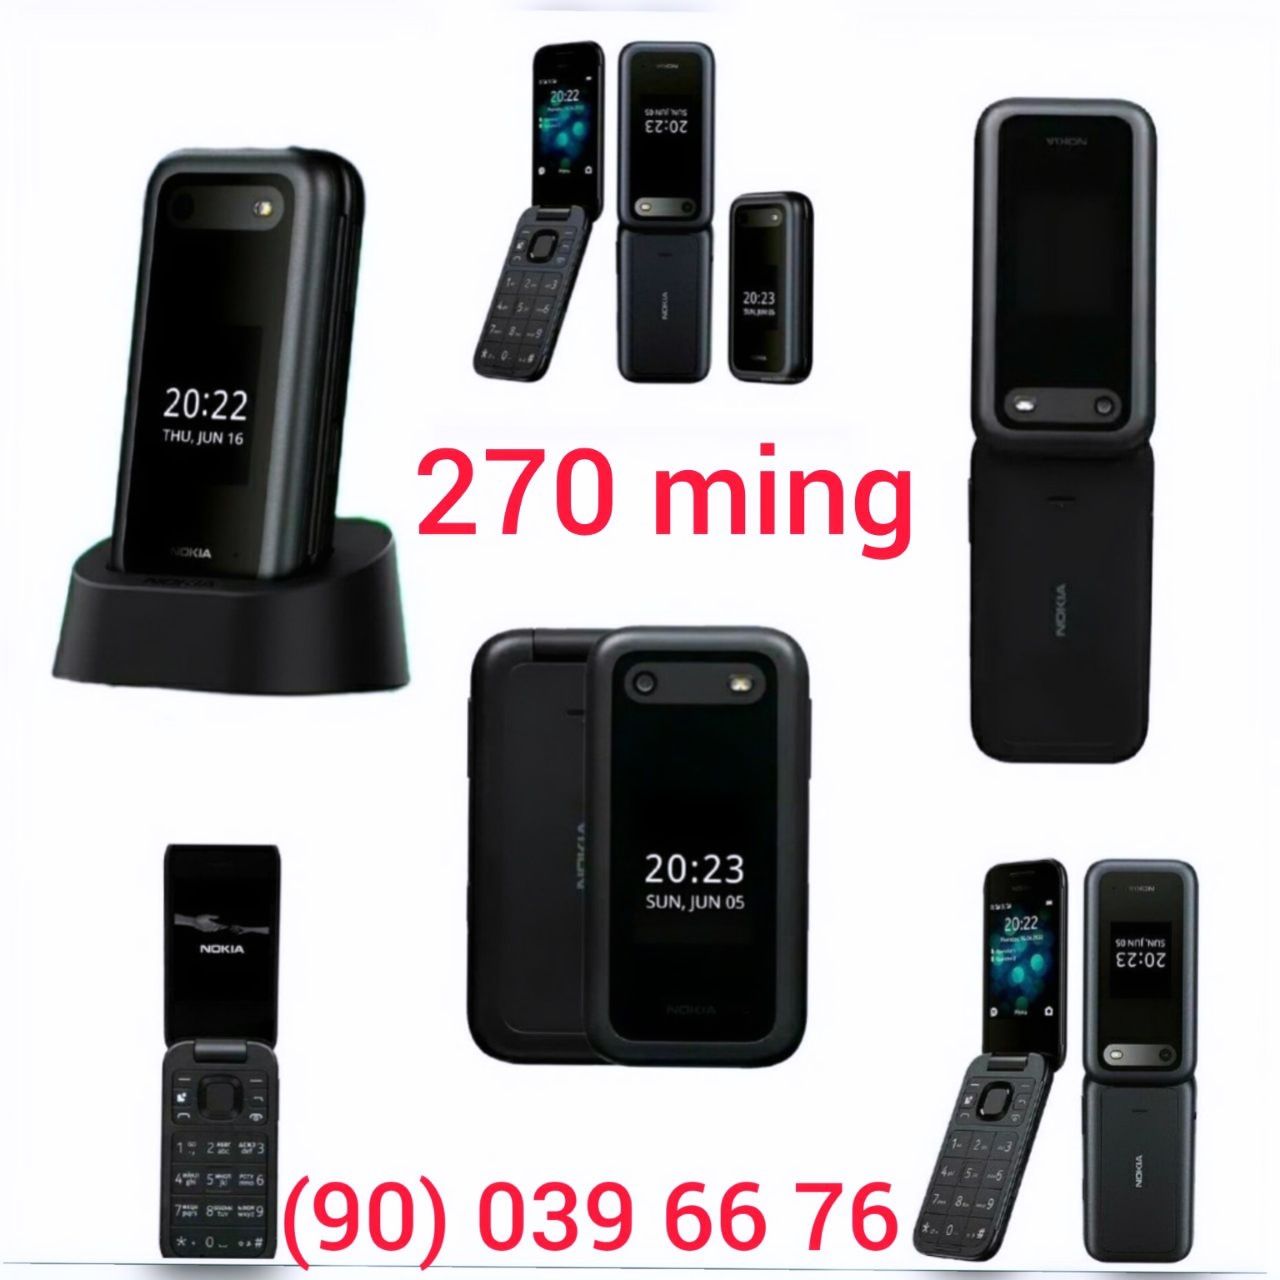 Nokia 8110 bananka, Nokia 6300, Nokia 5310, Nokia 105, Nokia 2720,2660